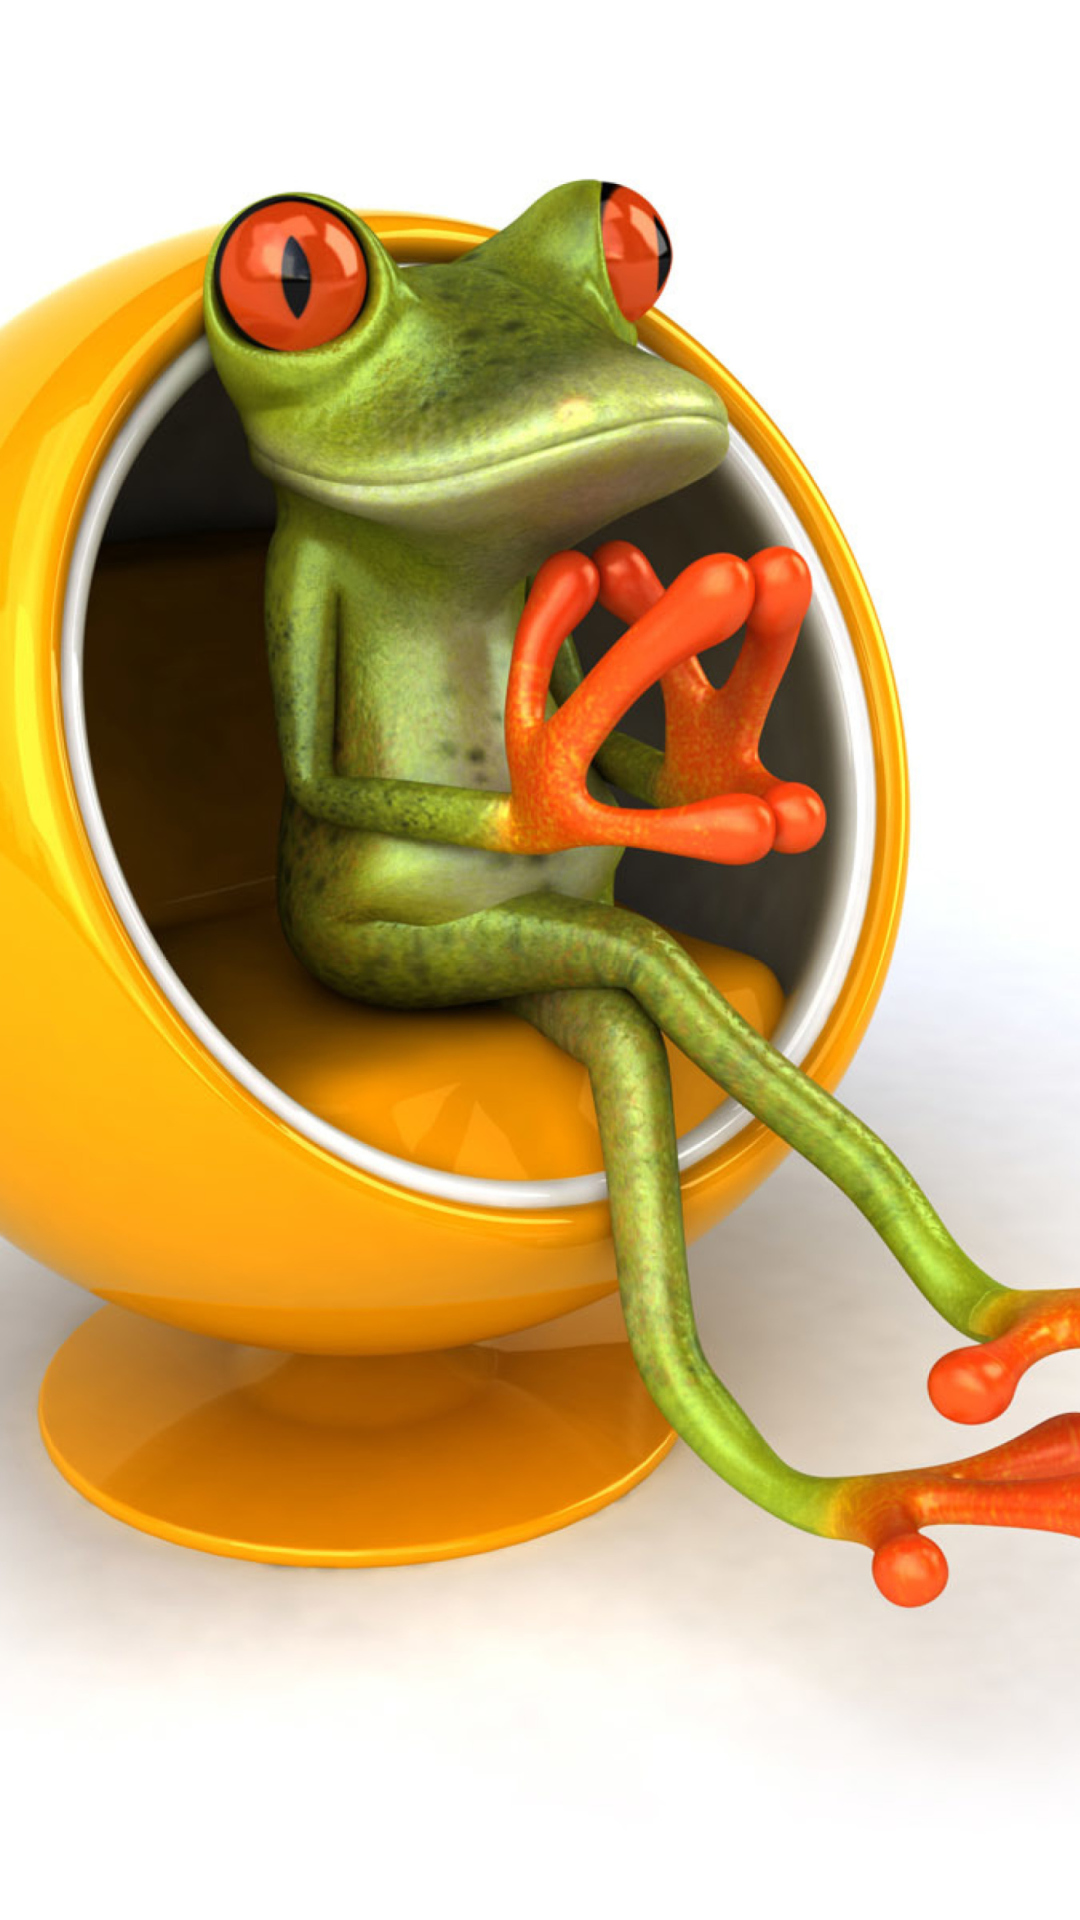 Обои 3D Frog On Yellow Chair 1080x1920